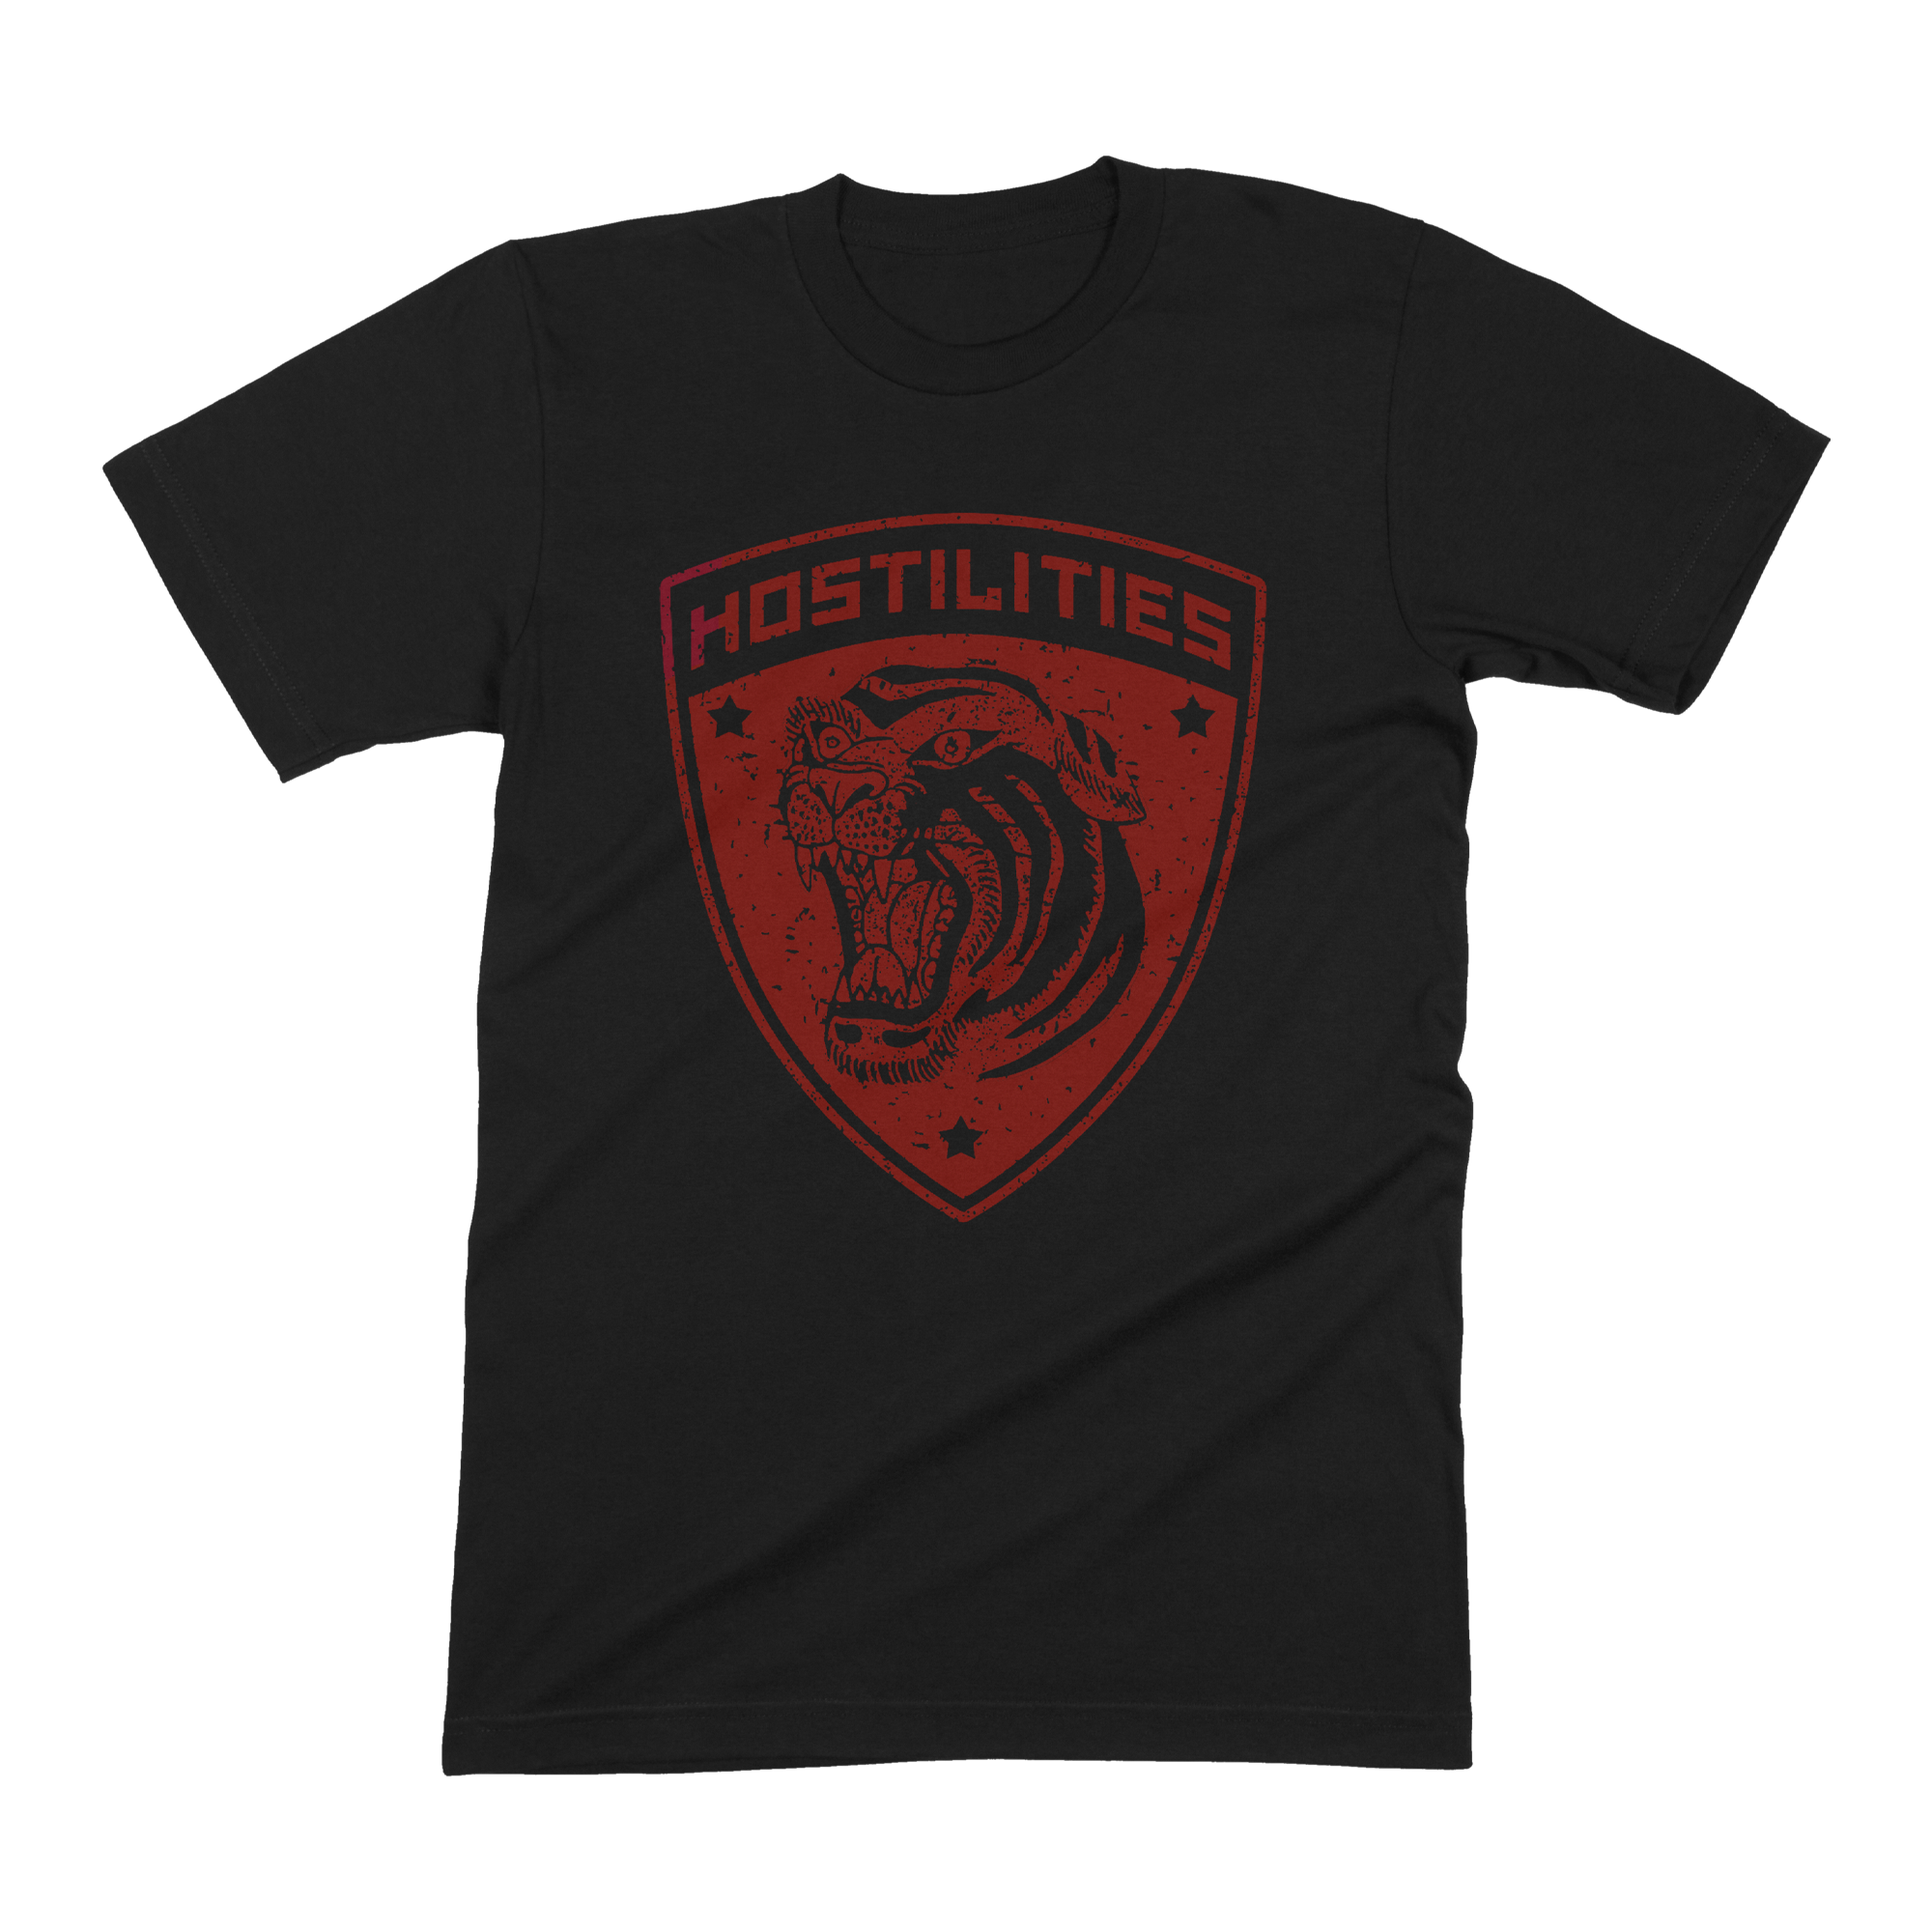 Hostilities - Tiger Shirt